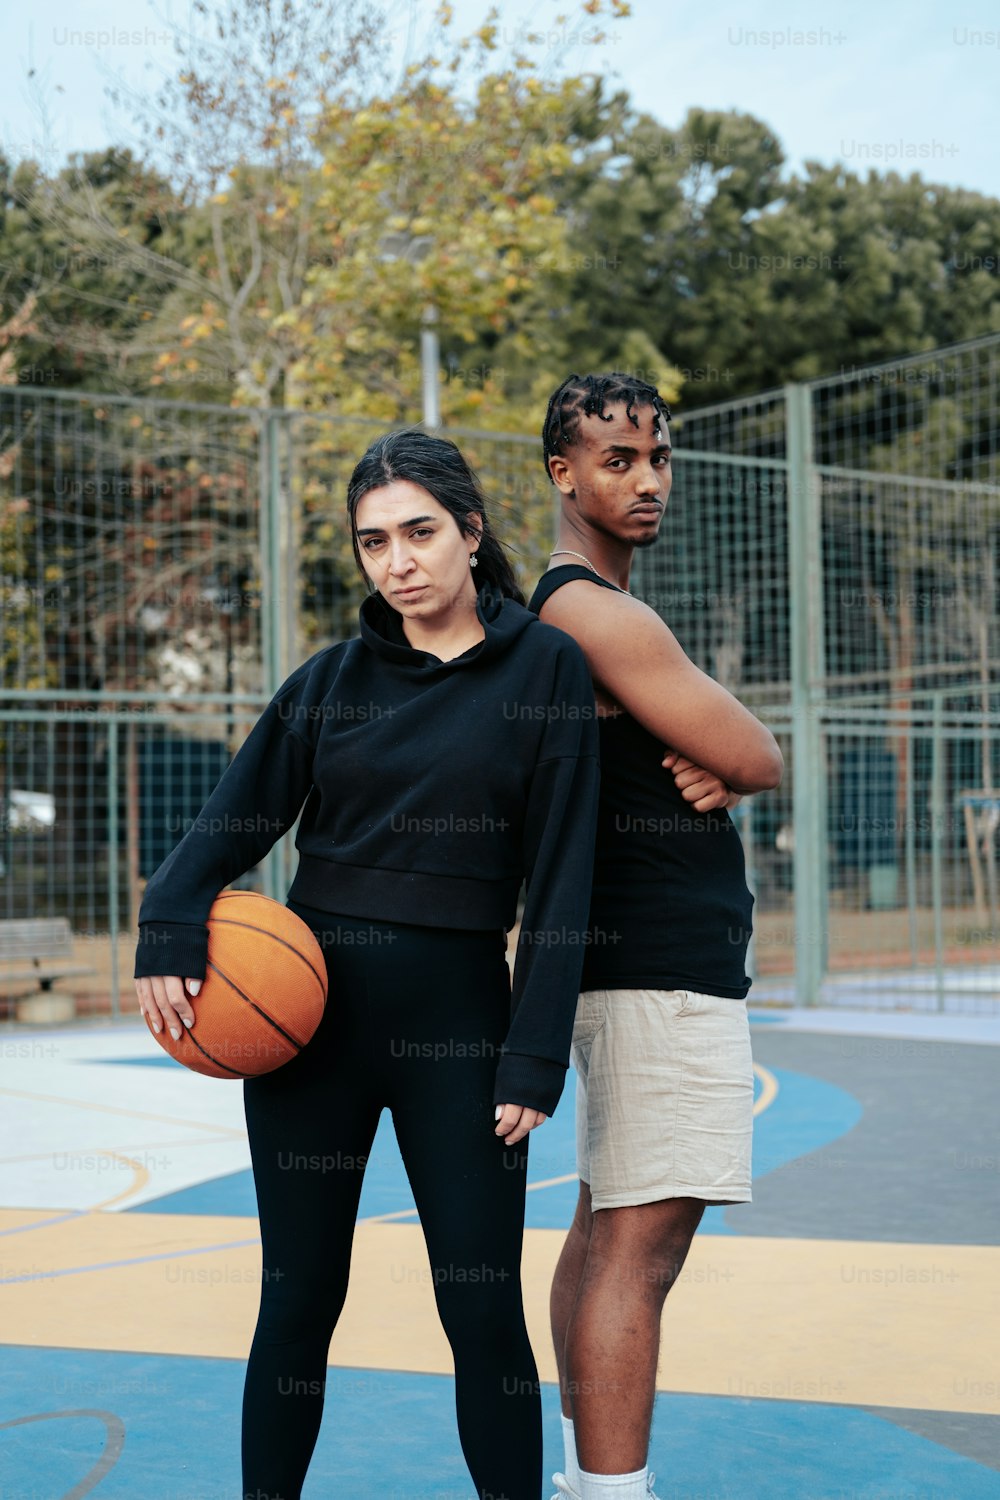 Ein Mann und eine Frau stehen auf einem Basketballplatz